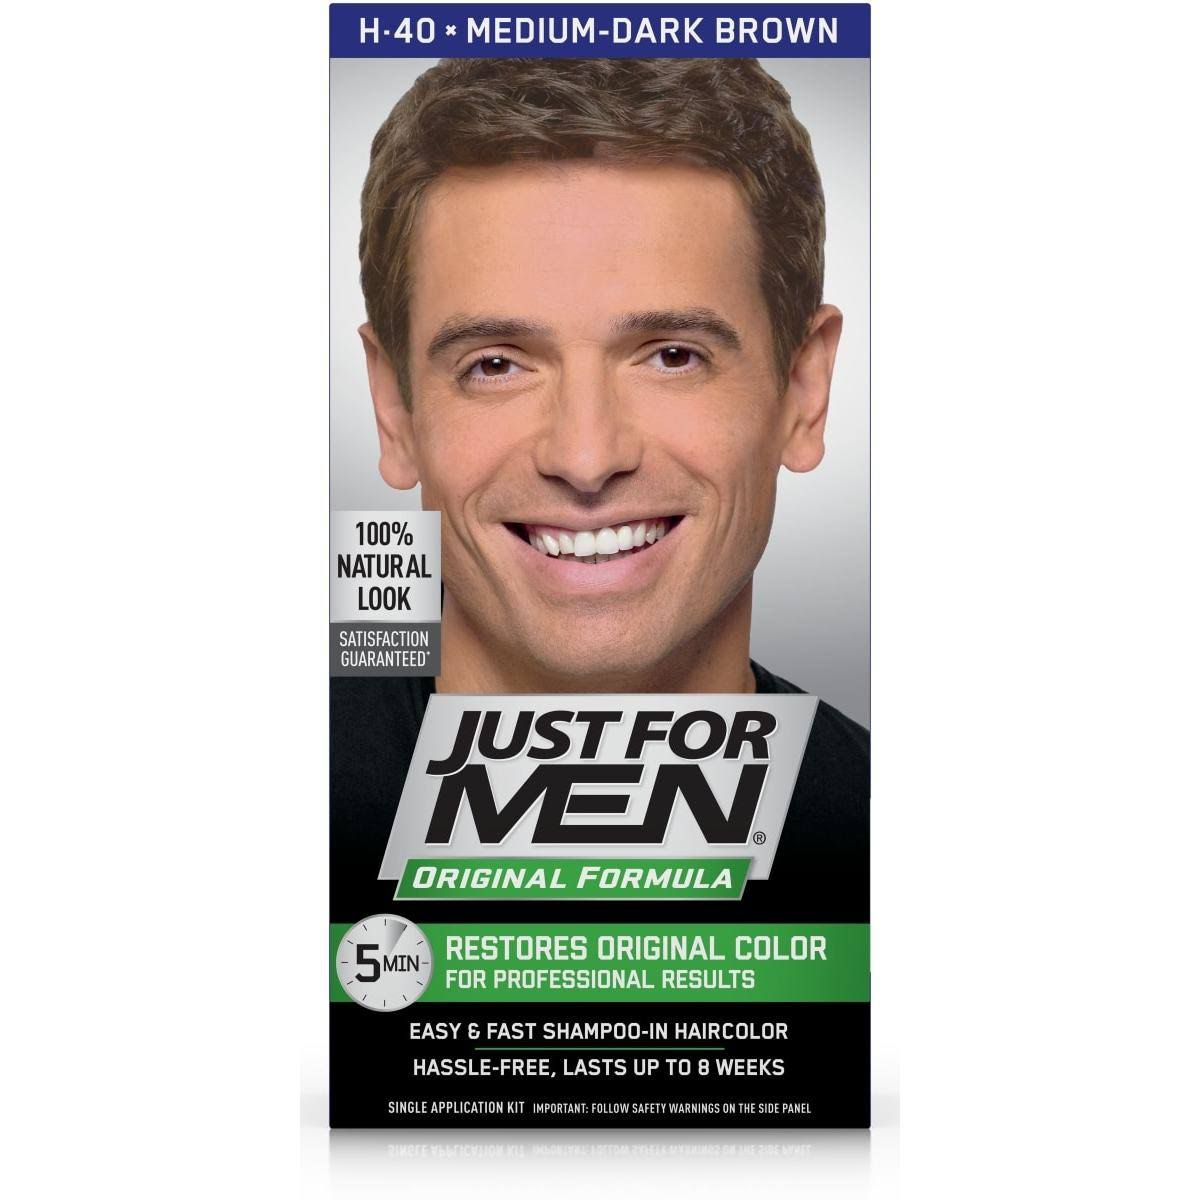 Just For Men Original Formula Men's Hair Color - Medium Dark Brown